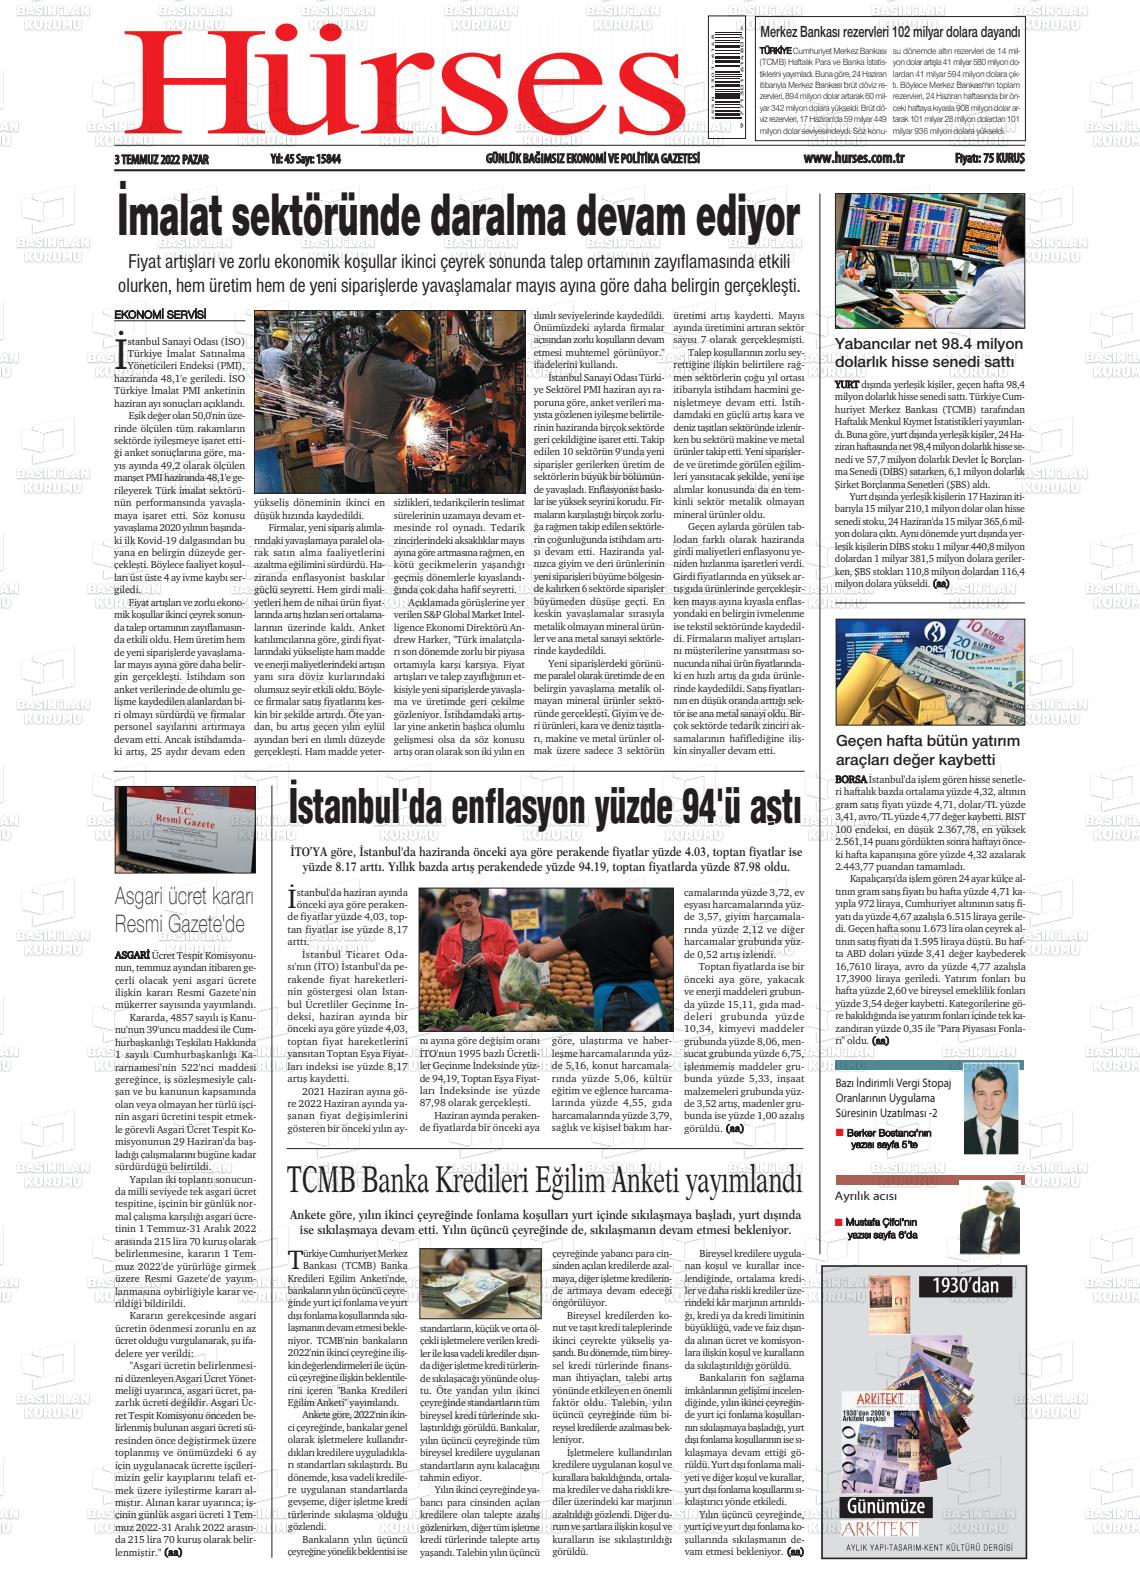 03 Temmuz 2022 İstanbul Hürses gazetesi Gazete Manşeti